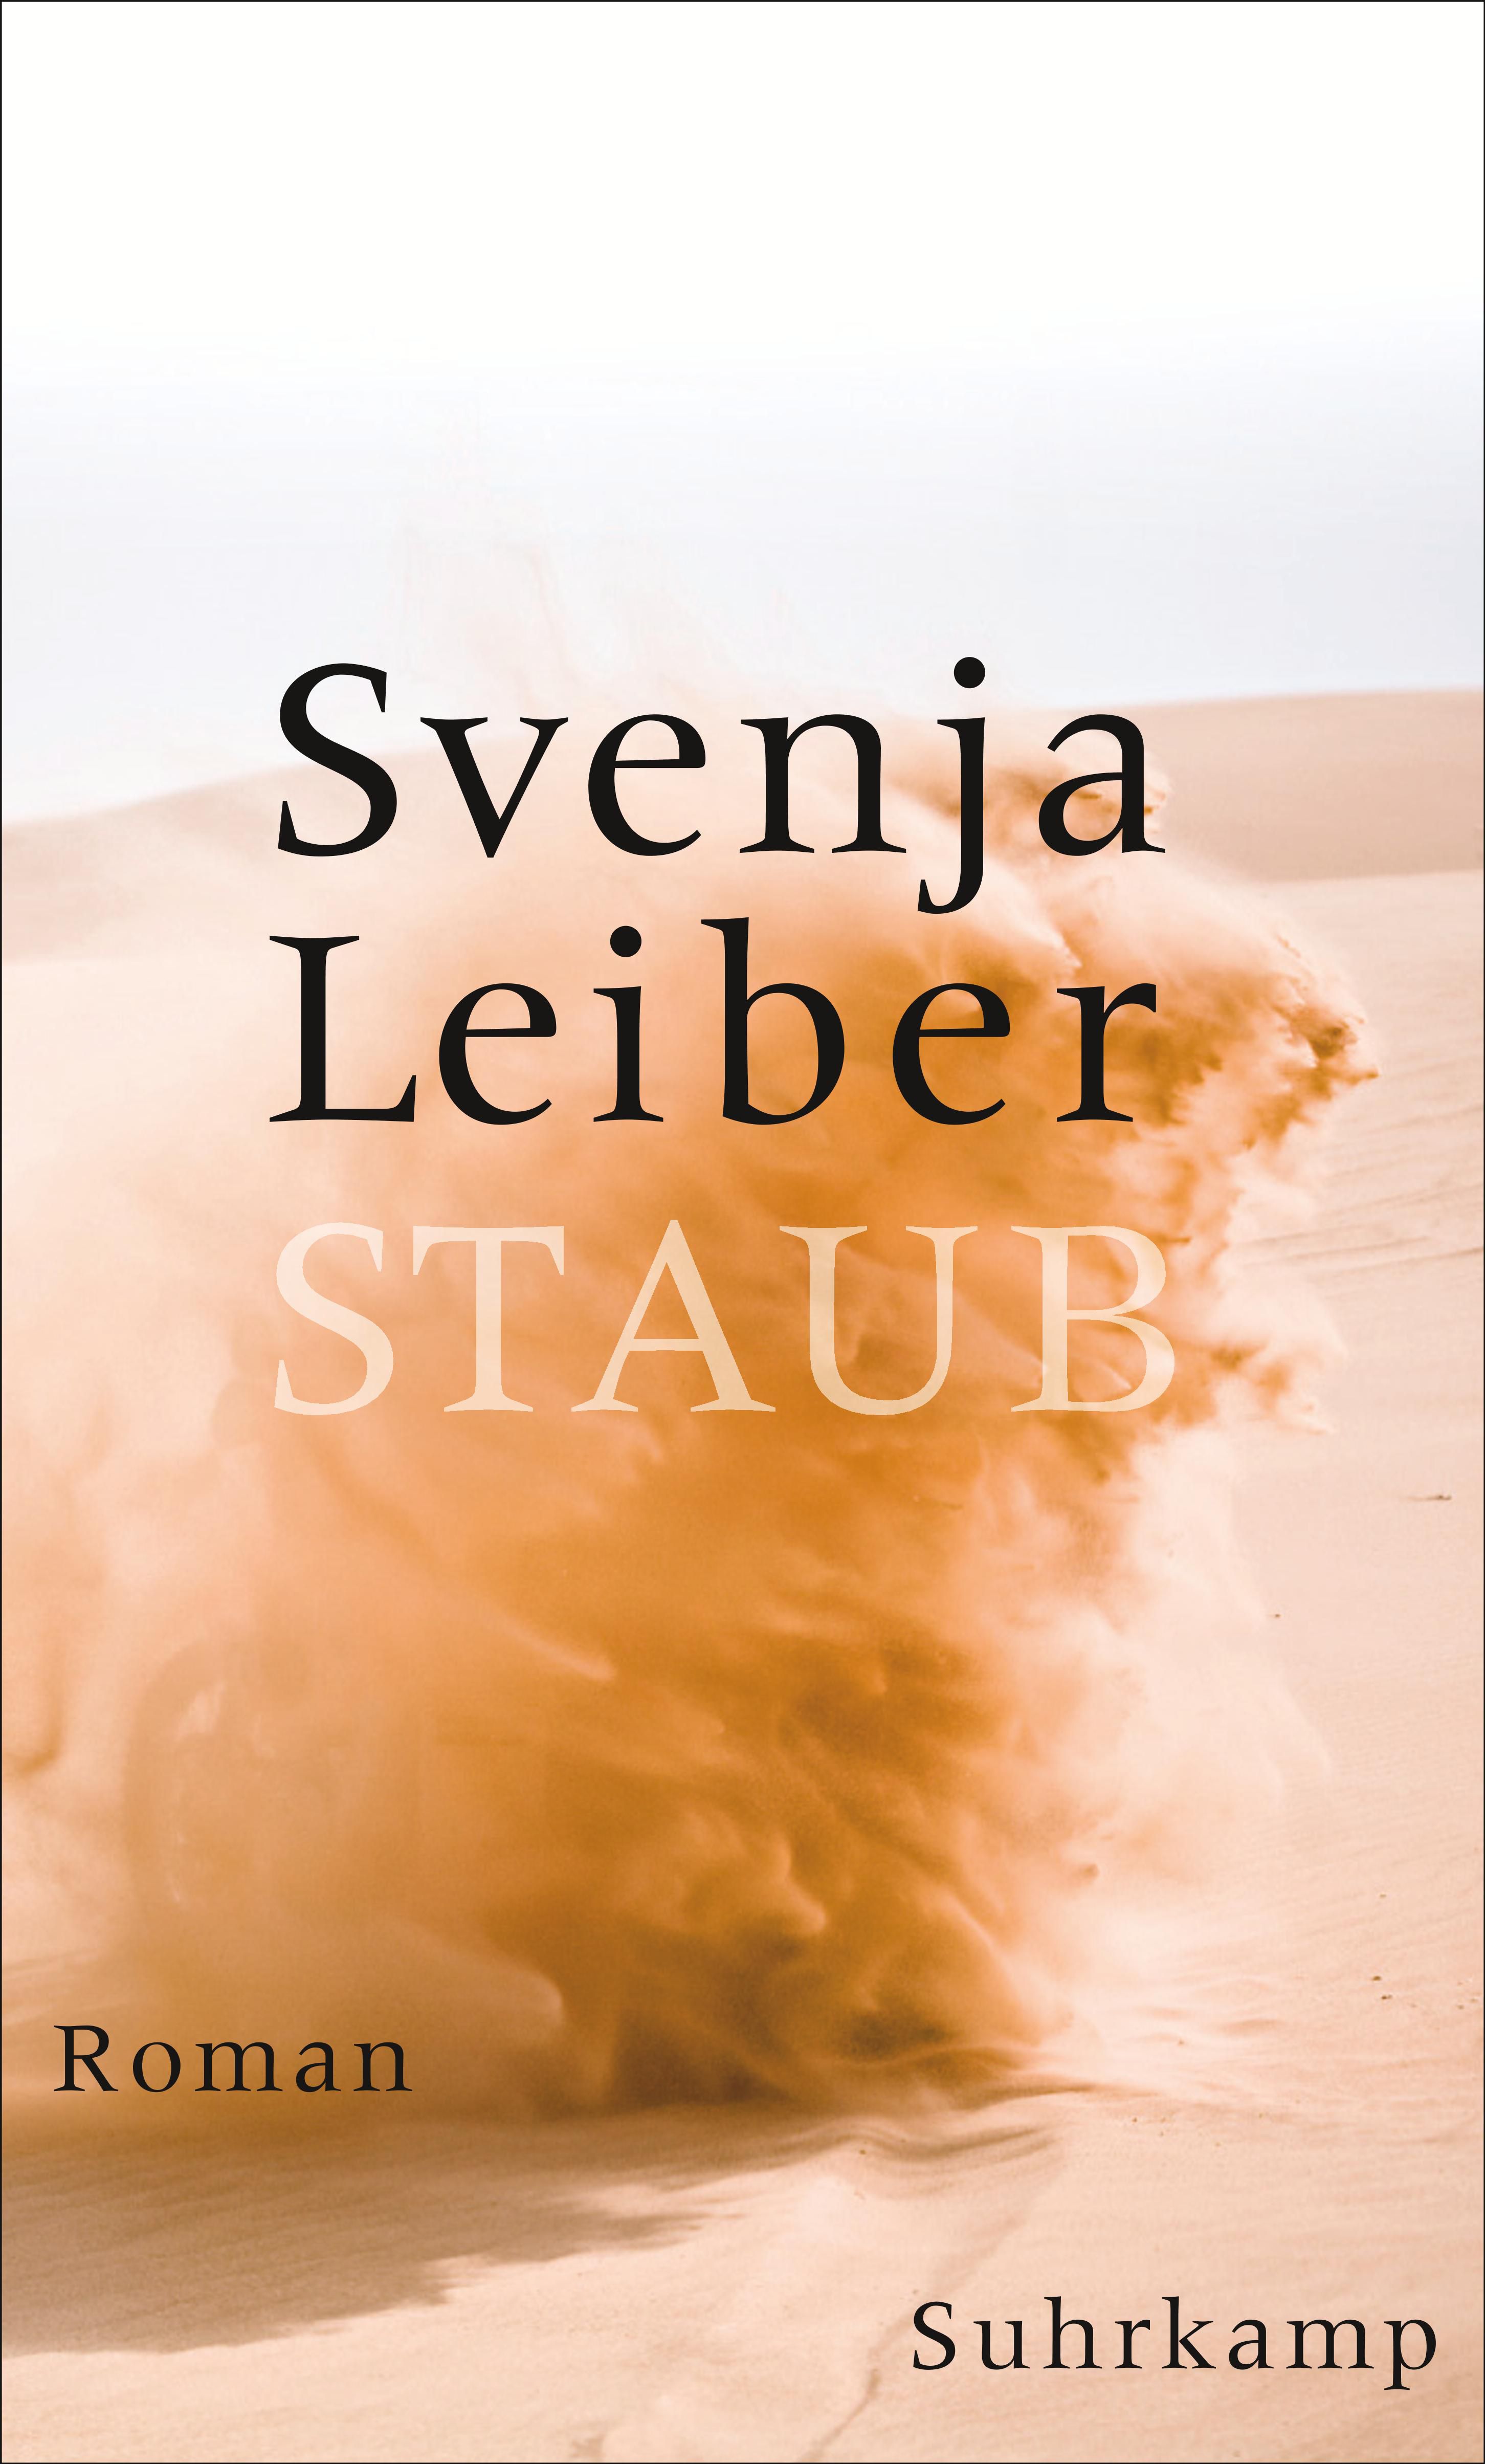 Svenja Leiber